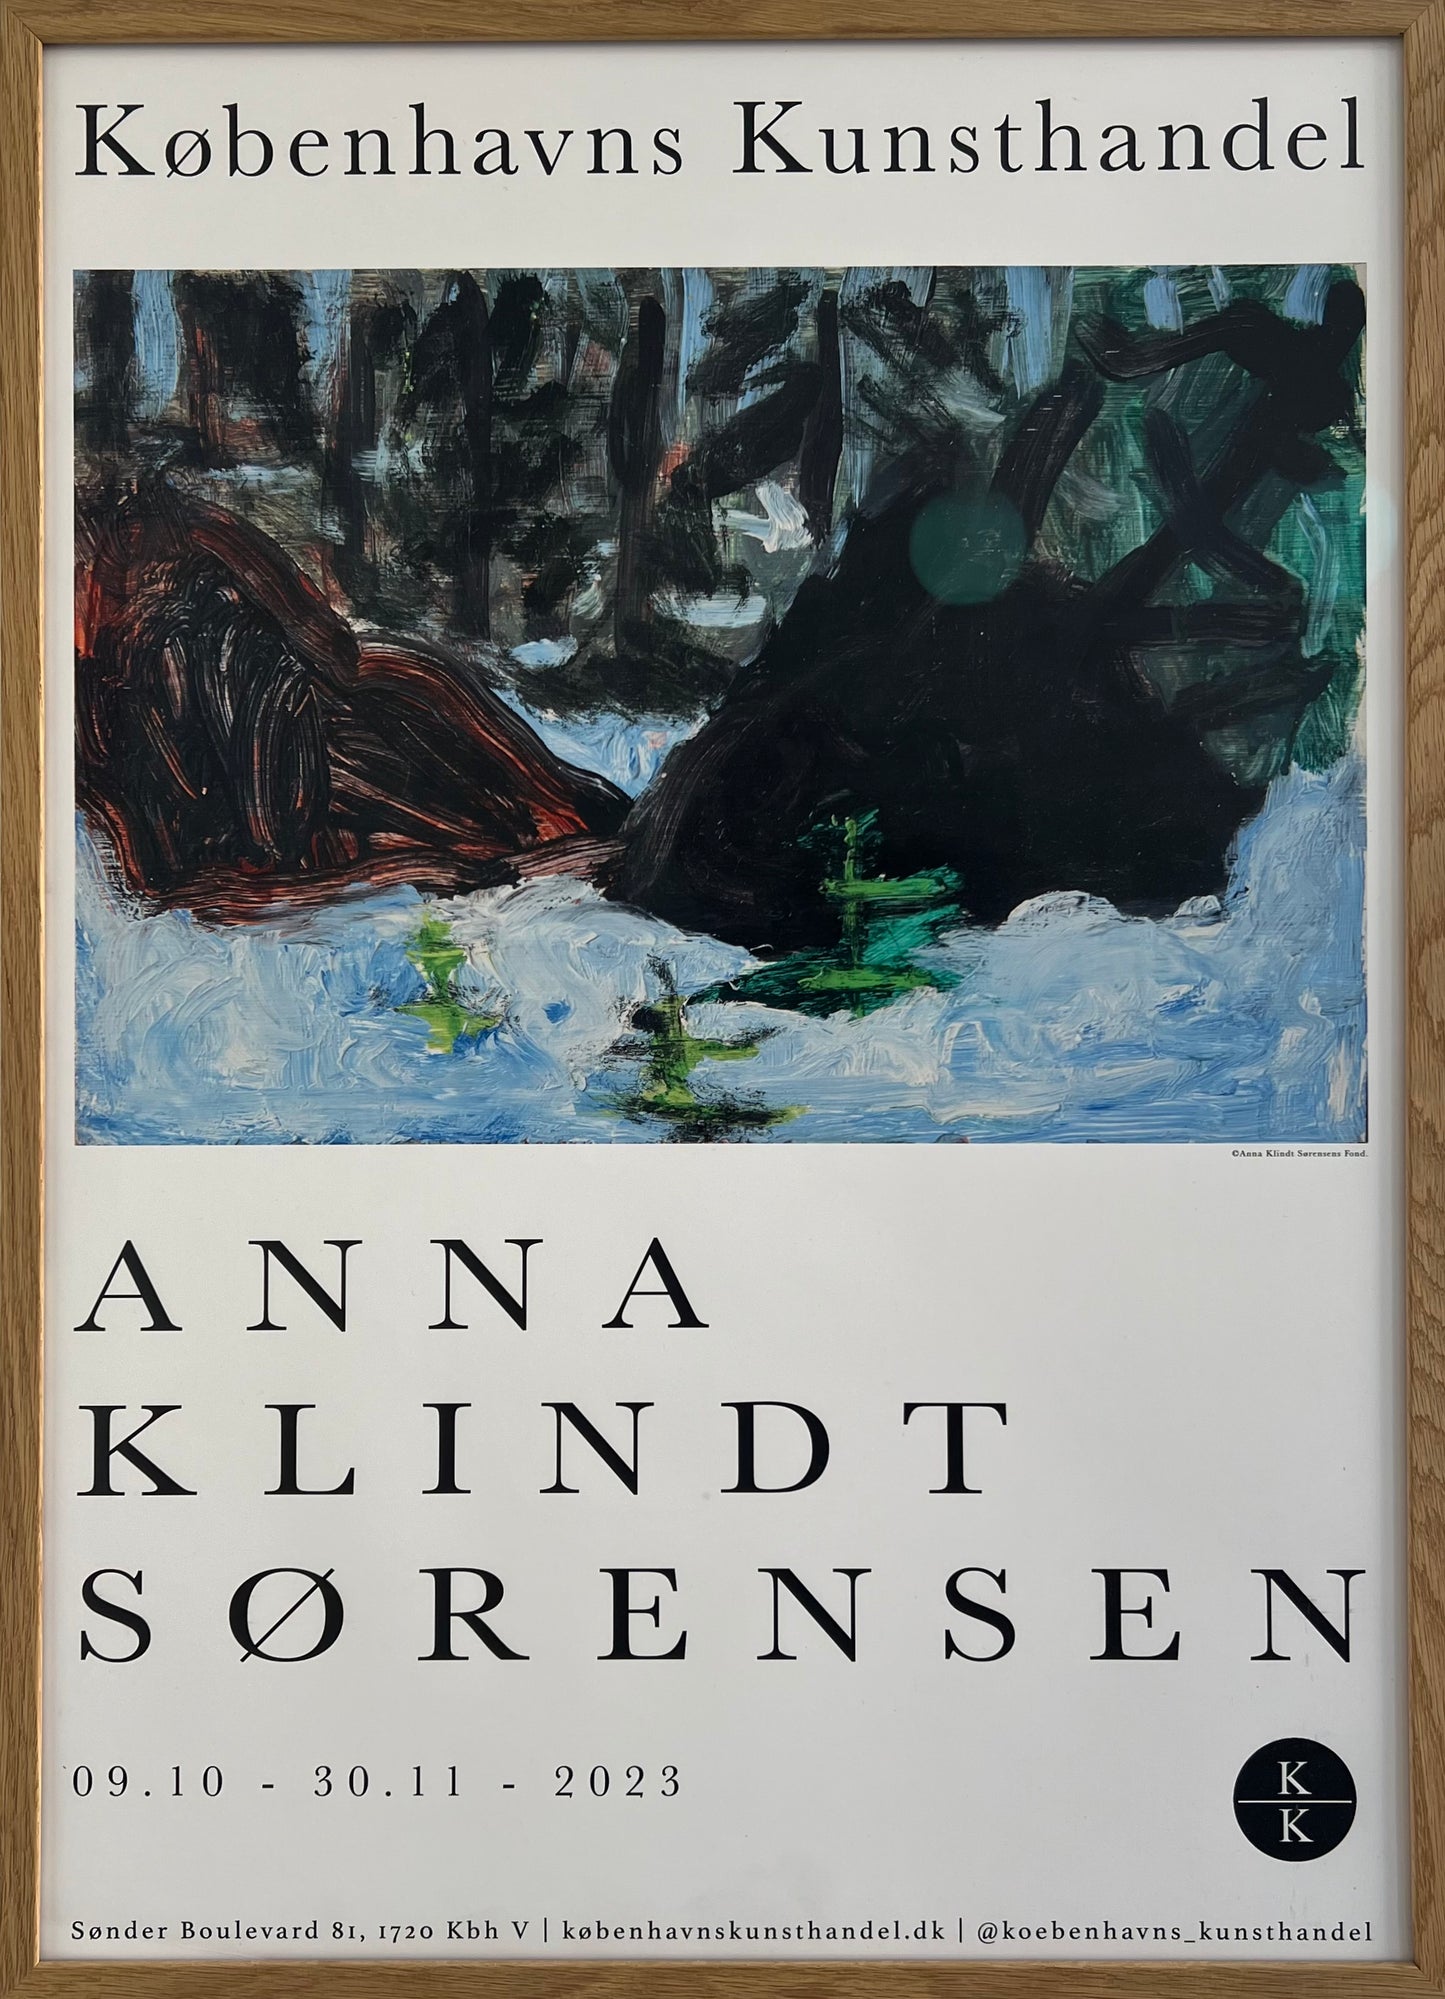 Anna Klindt Sørensen. Exhibition poster, 2023